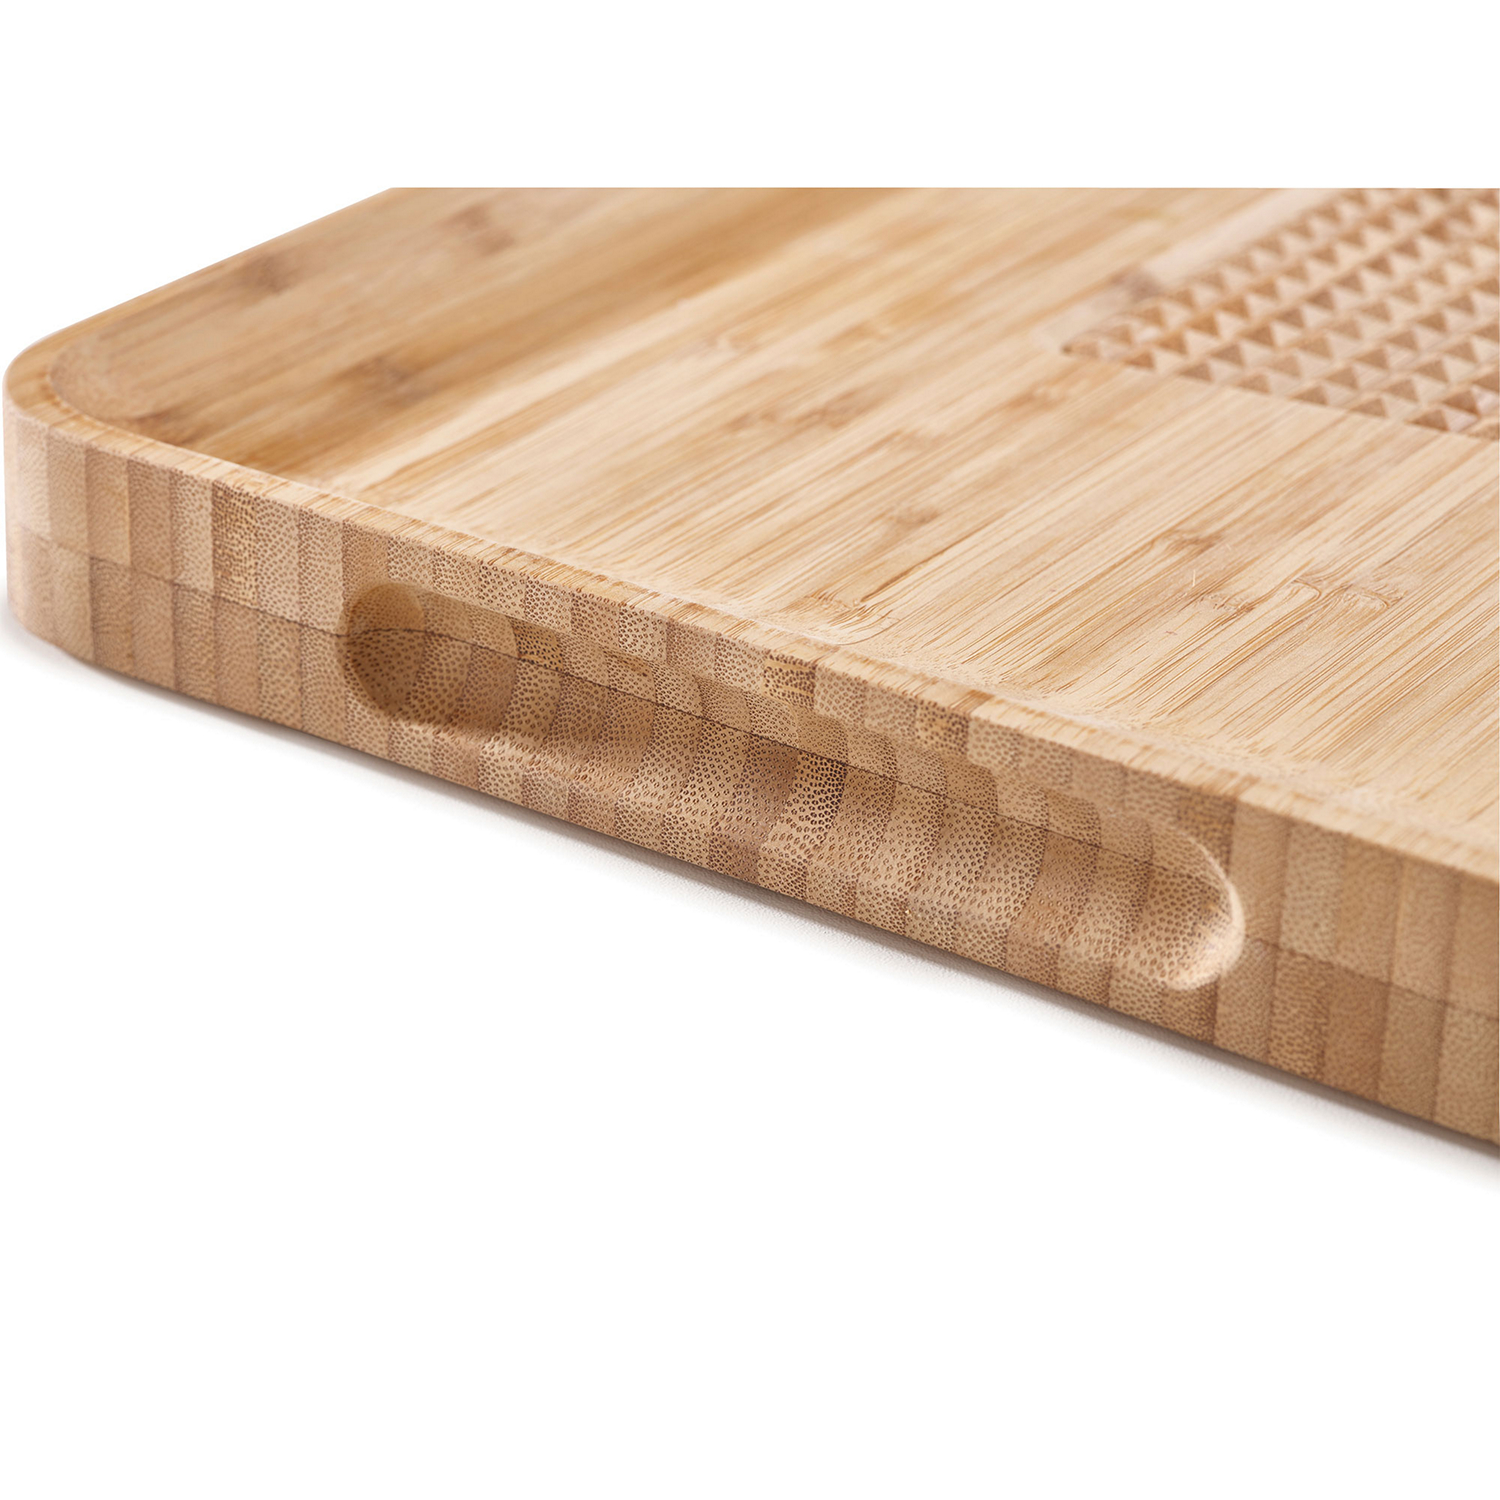 Cut & Carve Bamboo Chopping Board